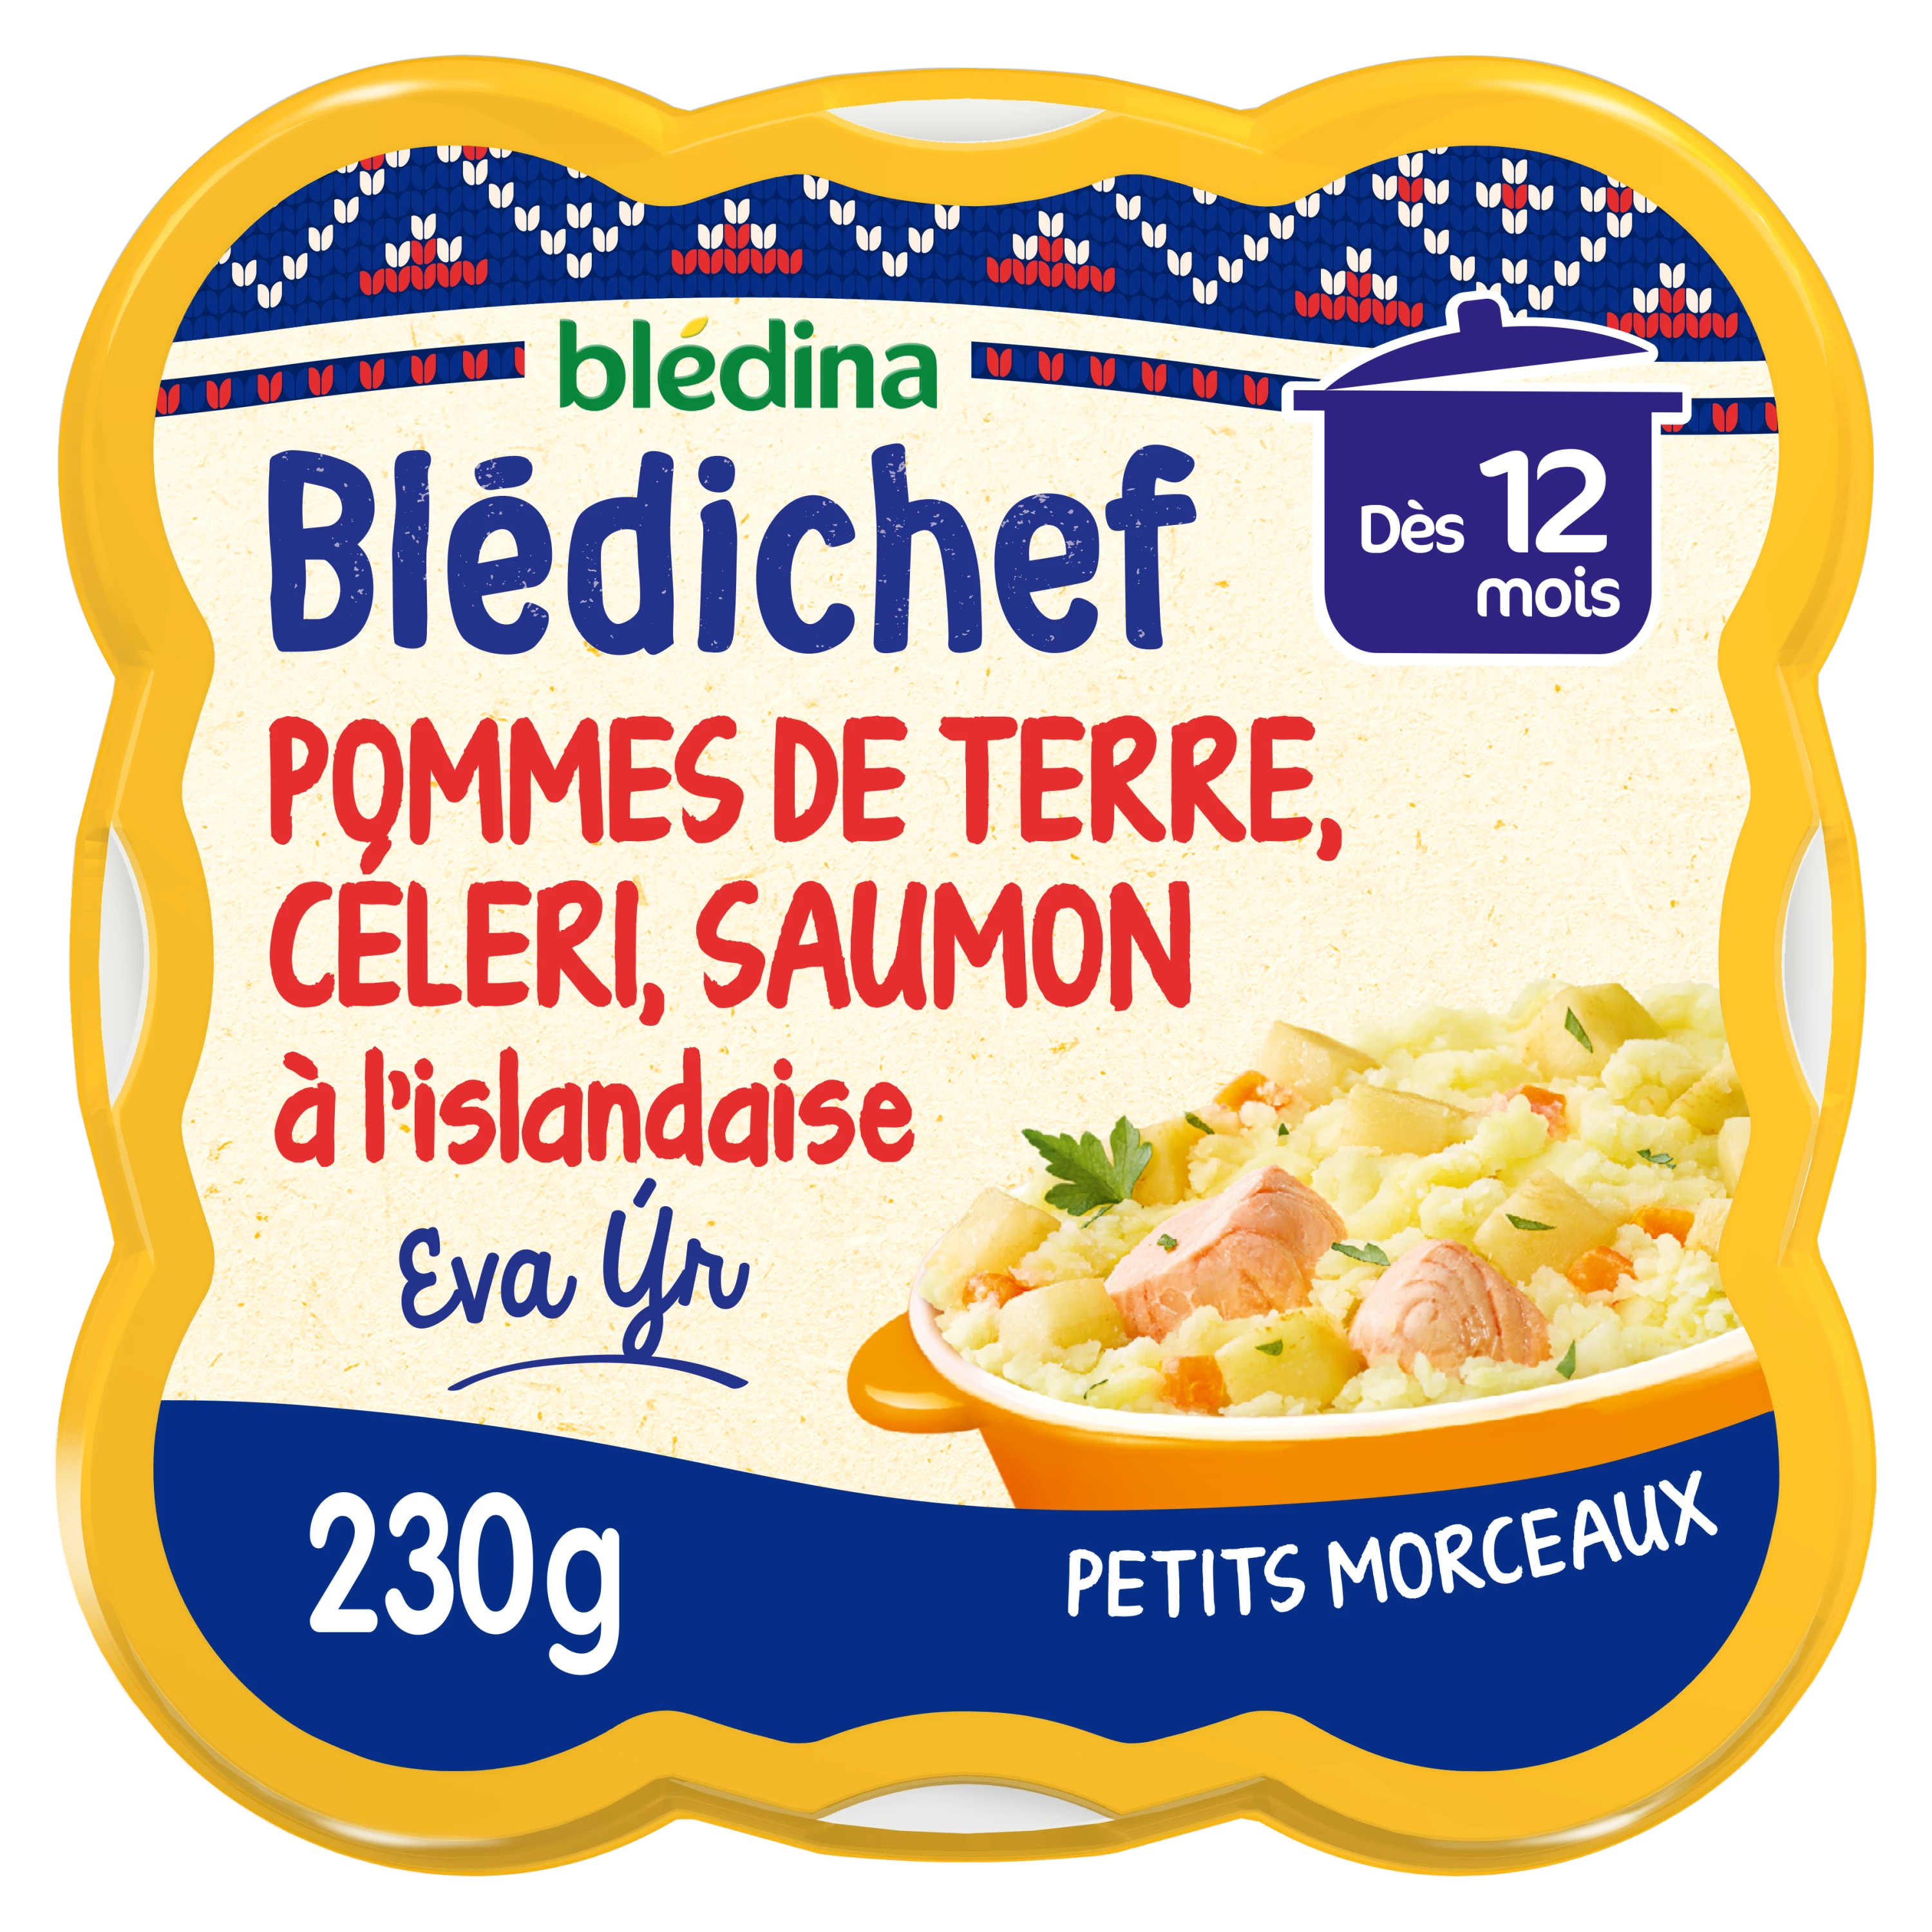 Món ăn Blédichef cho bé từ 12 tháng khoai tây nghiền cần tây và cá hồi Iceland 230g - BLEDINA